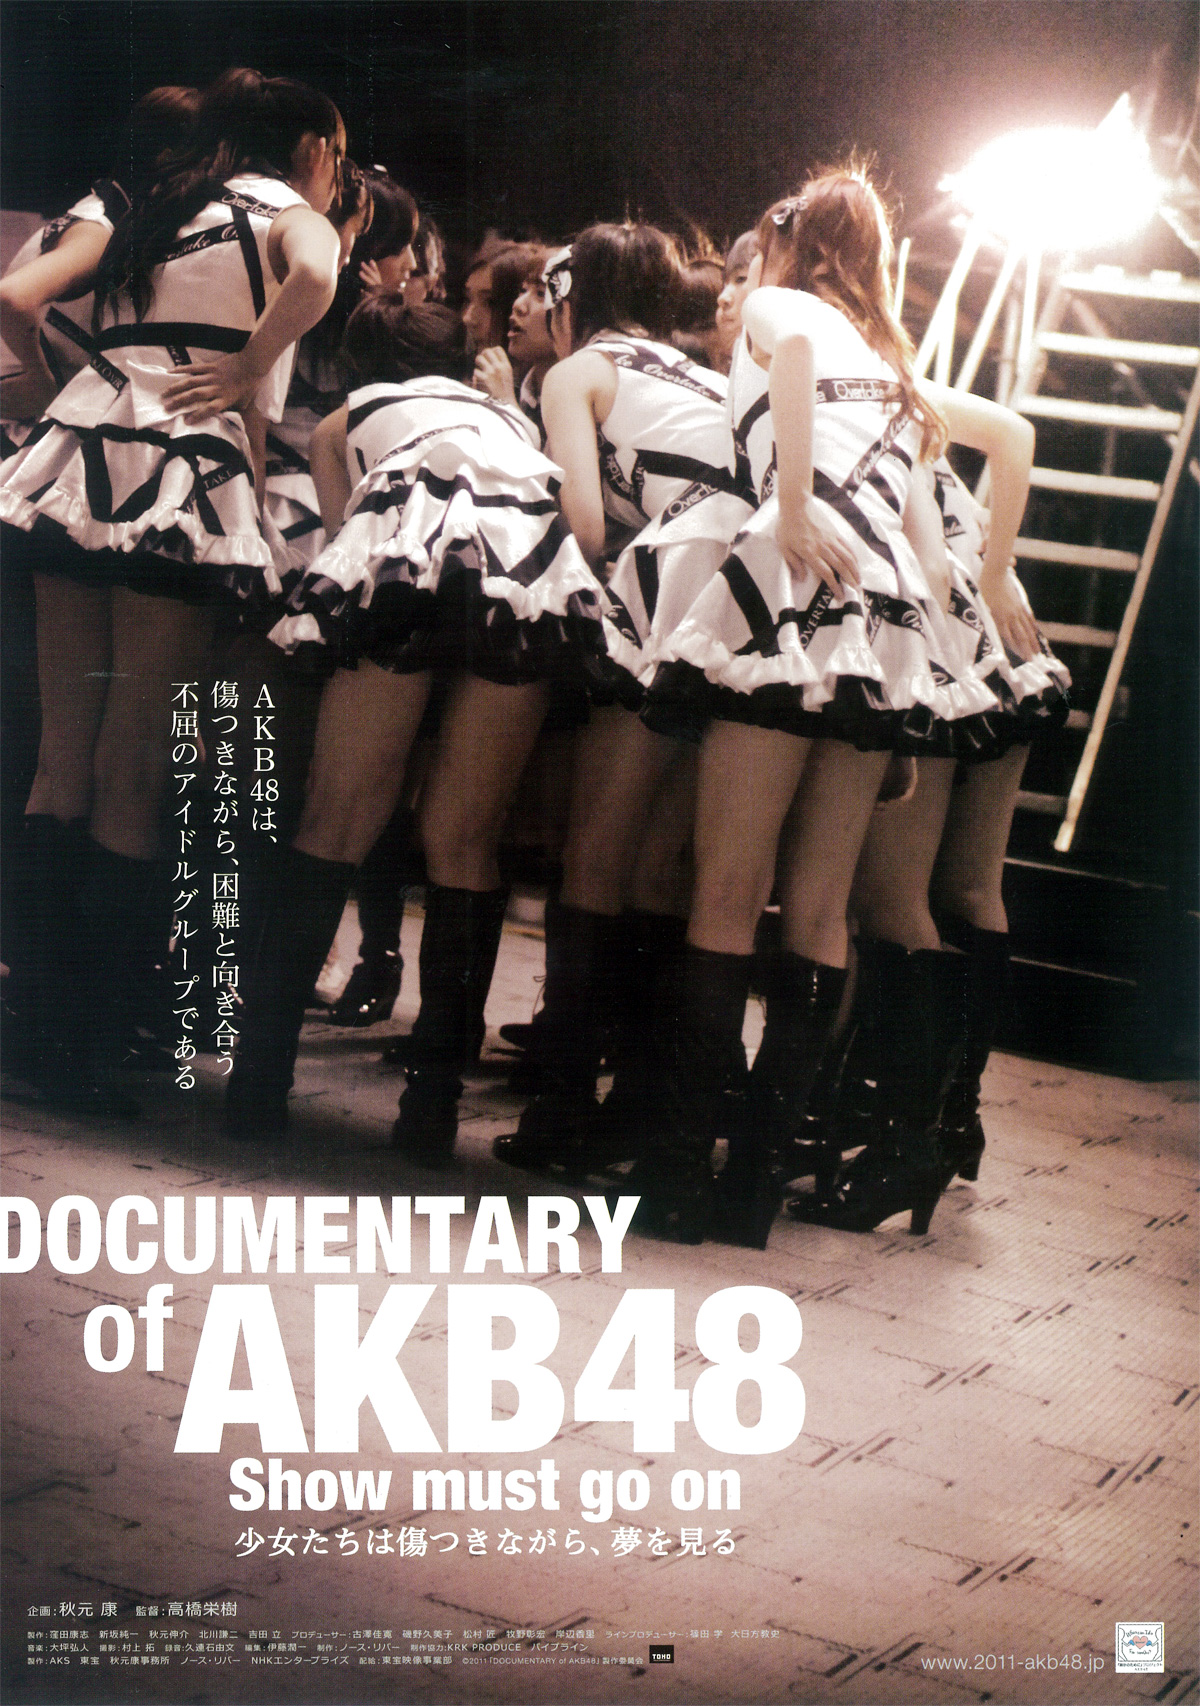 DOCUMENTARY of AKB48 Show must go on 少女たちは傷つきながら、夢を見るの画像